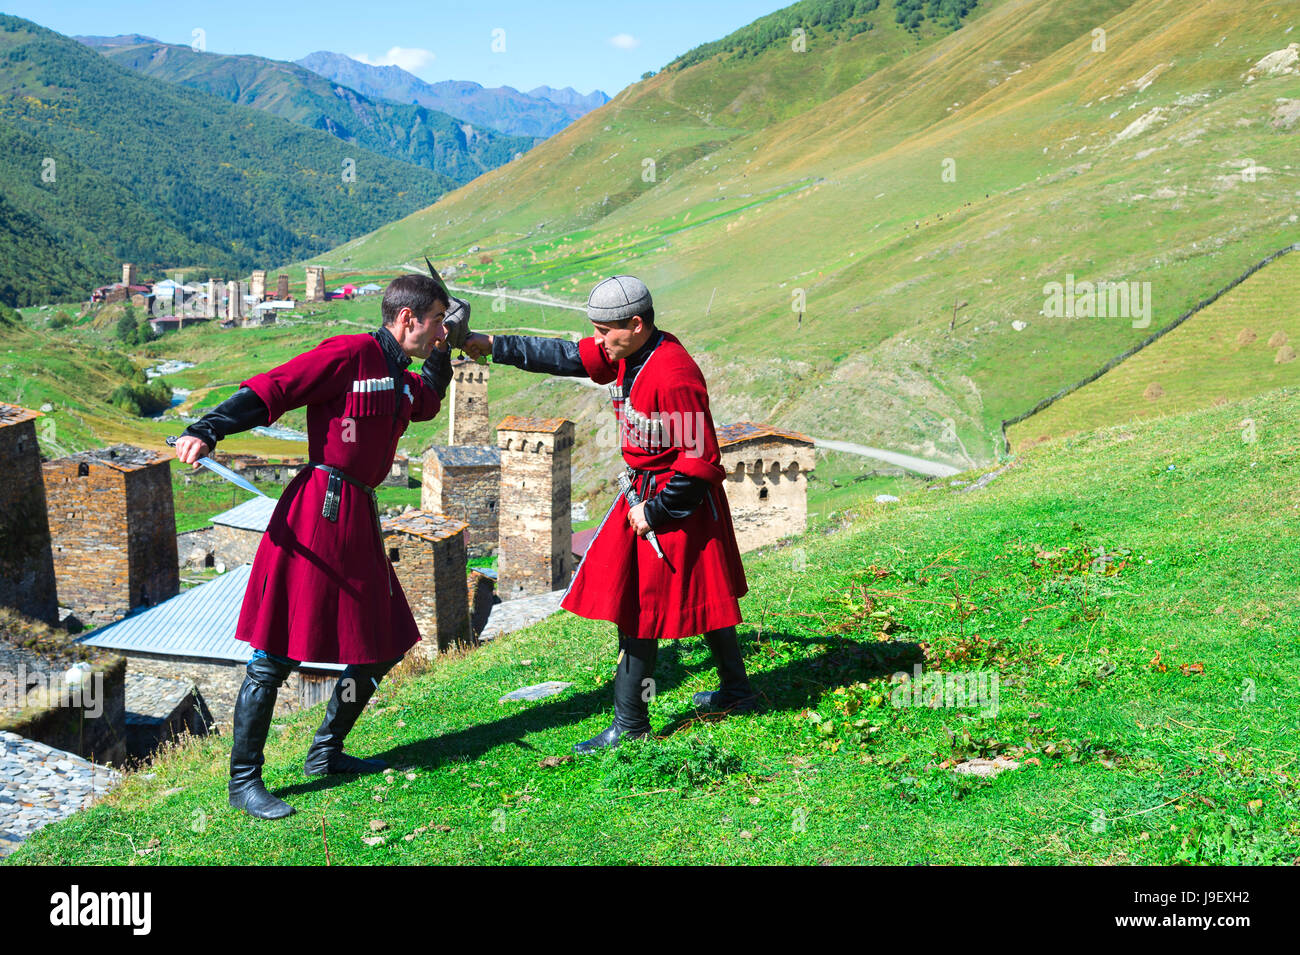 Il pugnale di spettacolo di combattimento da due uomini georgiano di un gruppo folcloristico, Ushguli, regione di Svaneti, Georgia Foto Stock